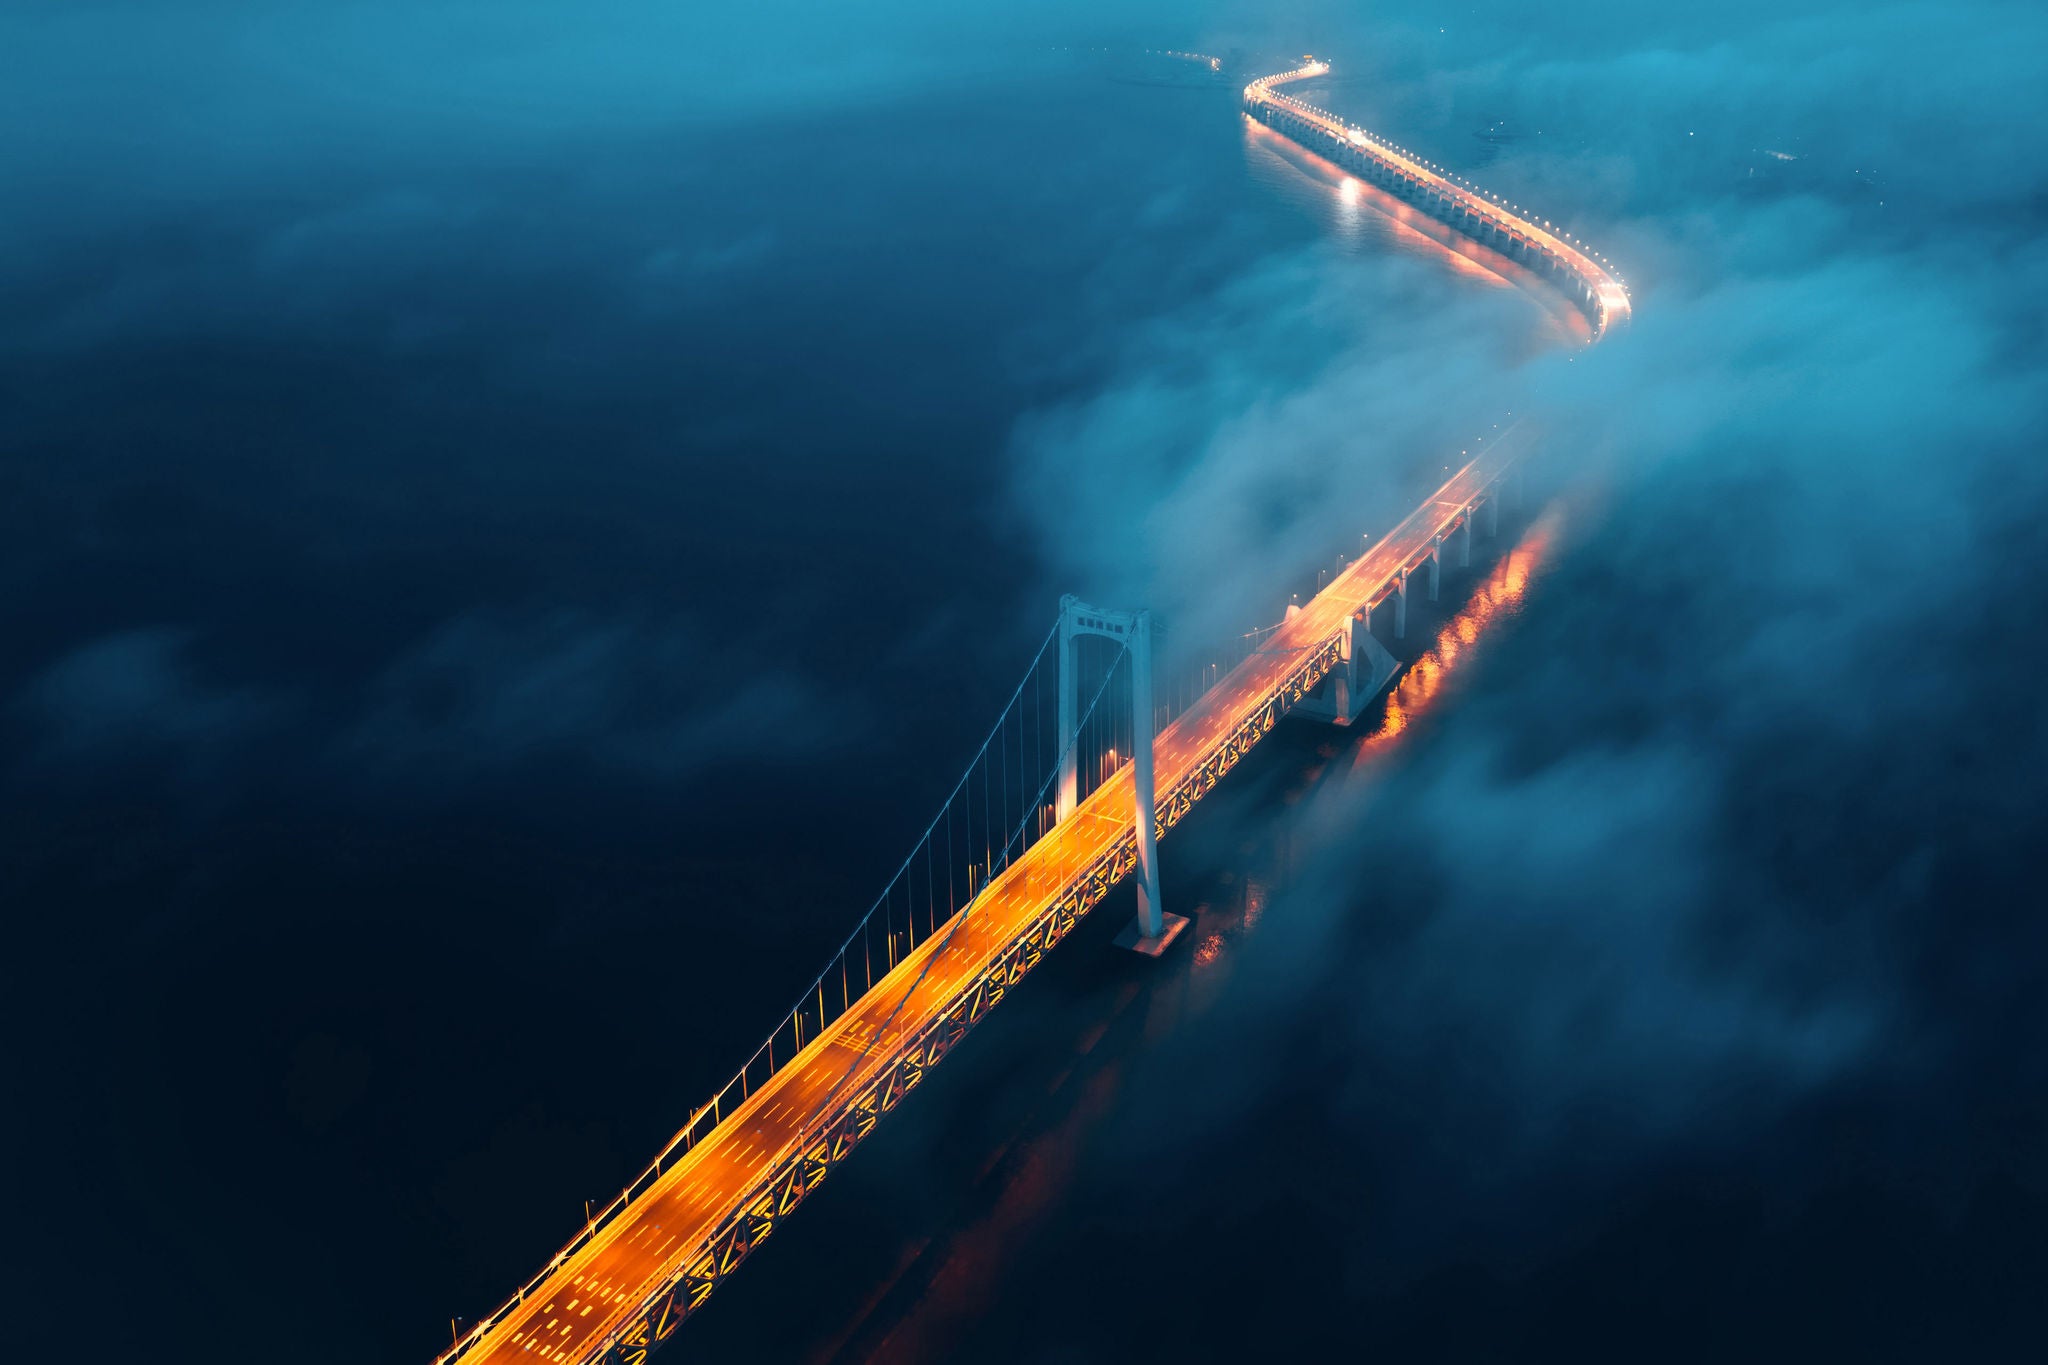 A cross-sea bridge in the fog at night